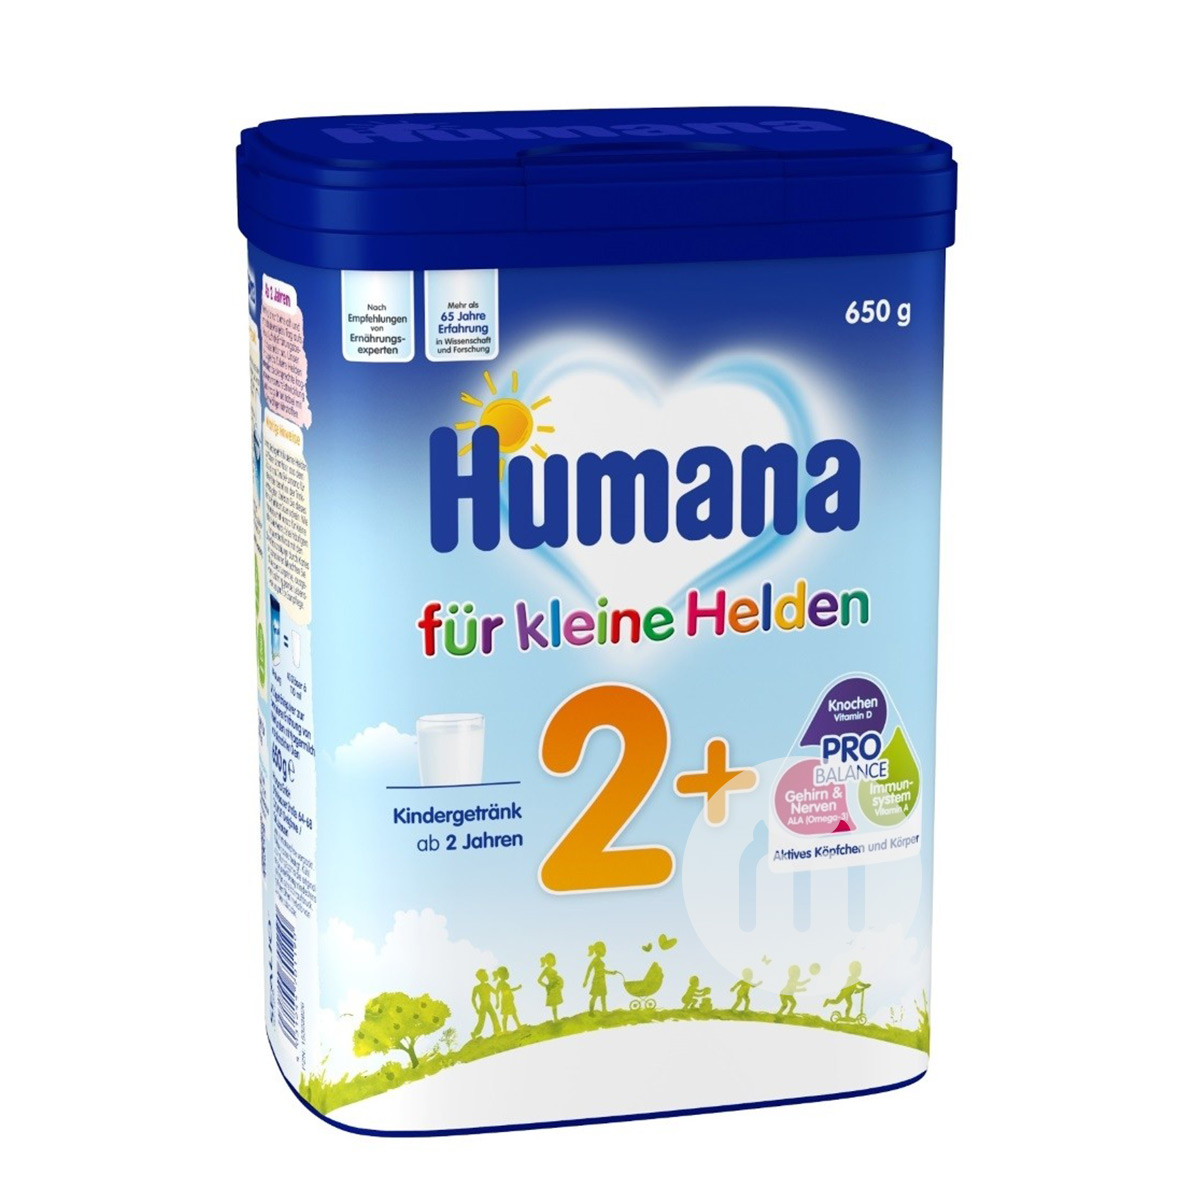 Humana susu bubuk bayi Jerman 2+ bagian 650g * 4 kotak versi luar nege...